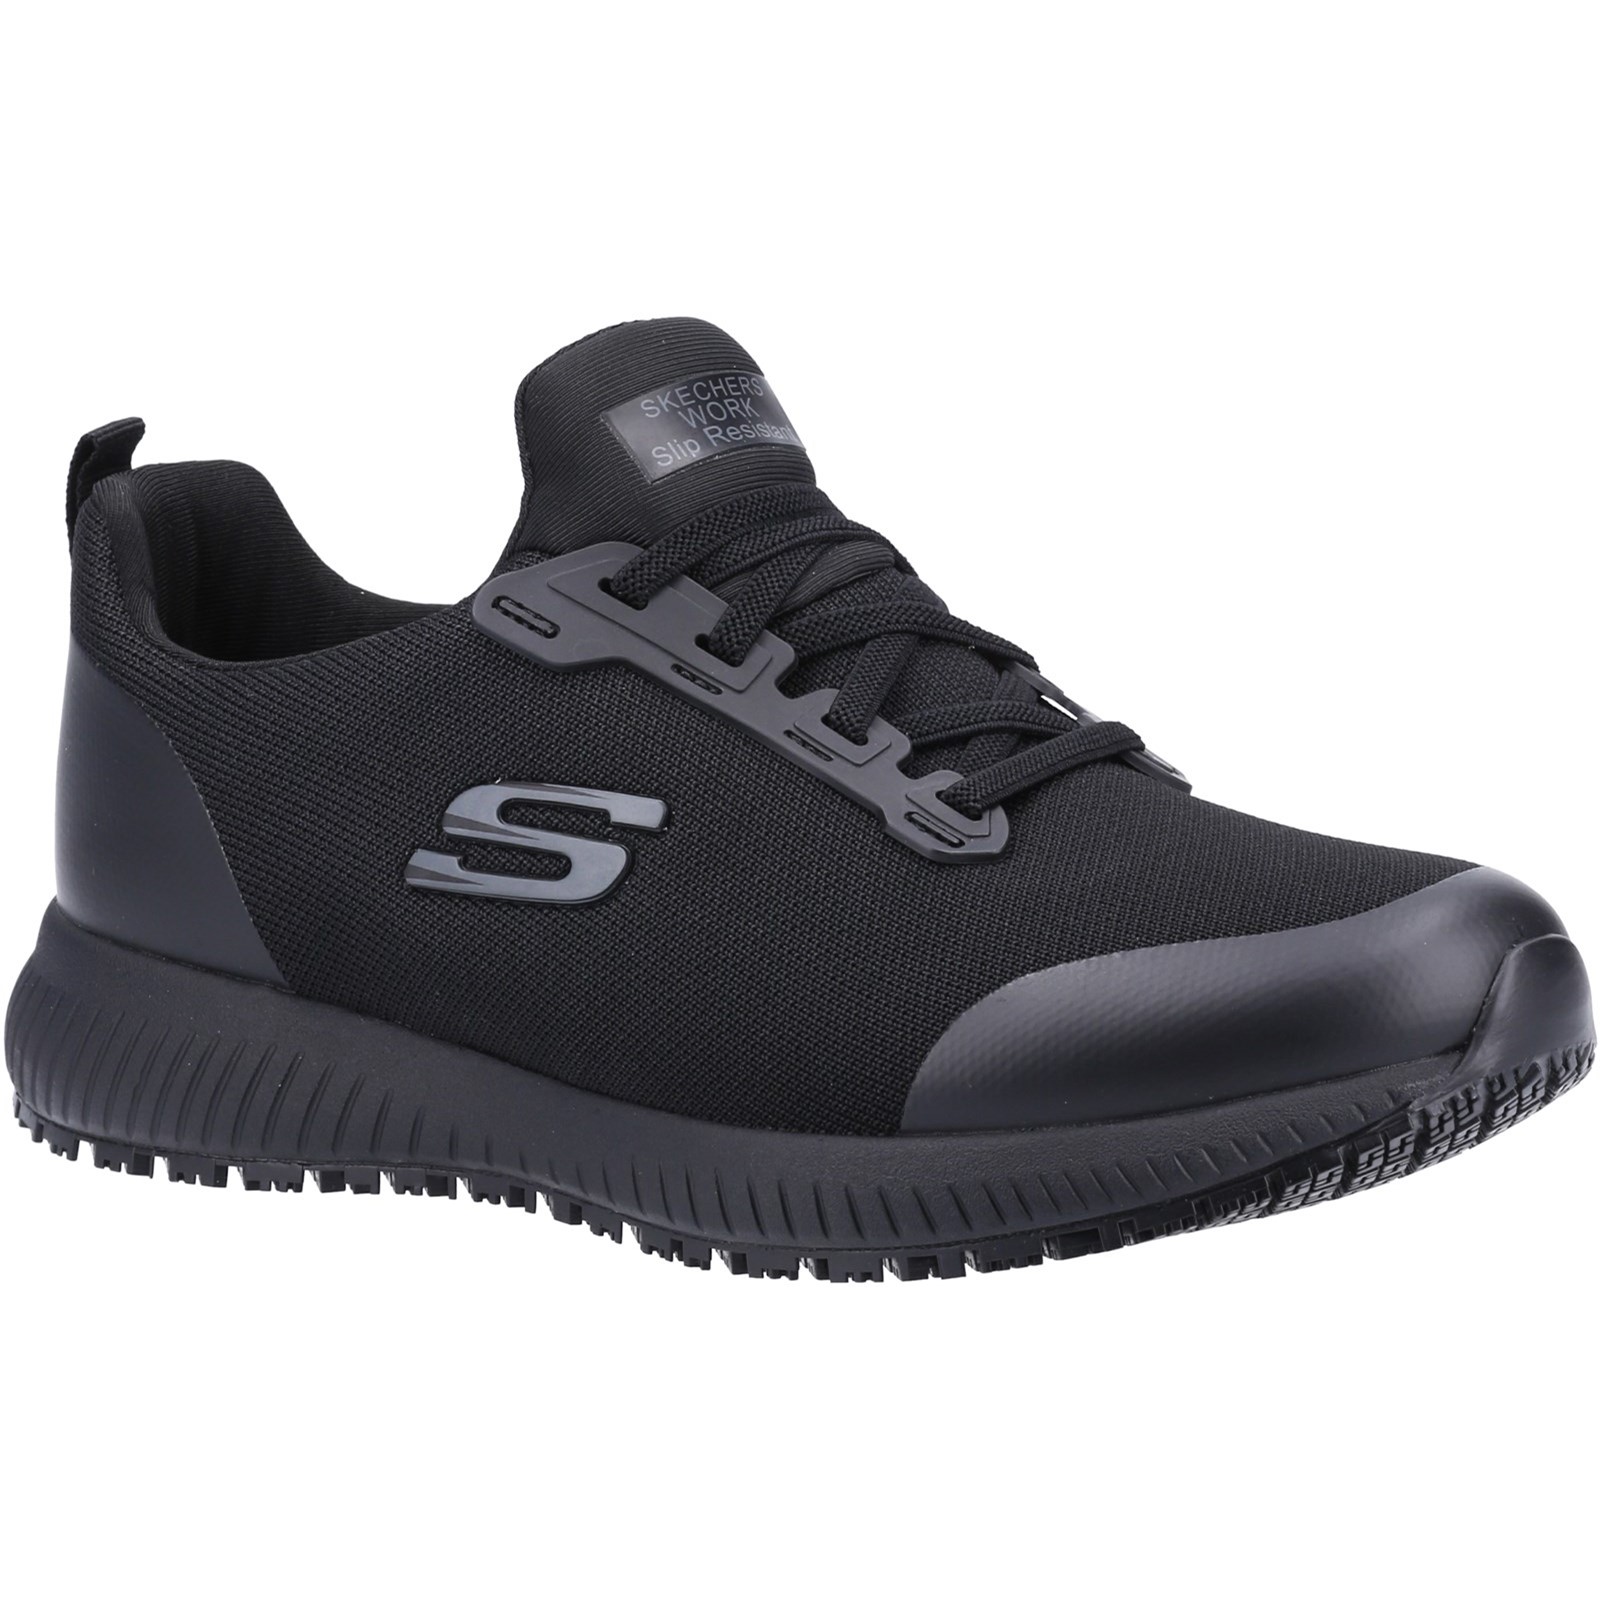 Squad Sr Wide Slip Resistant Occupational Shoe